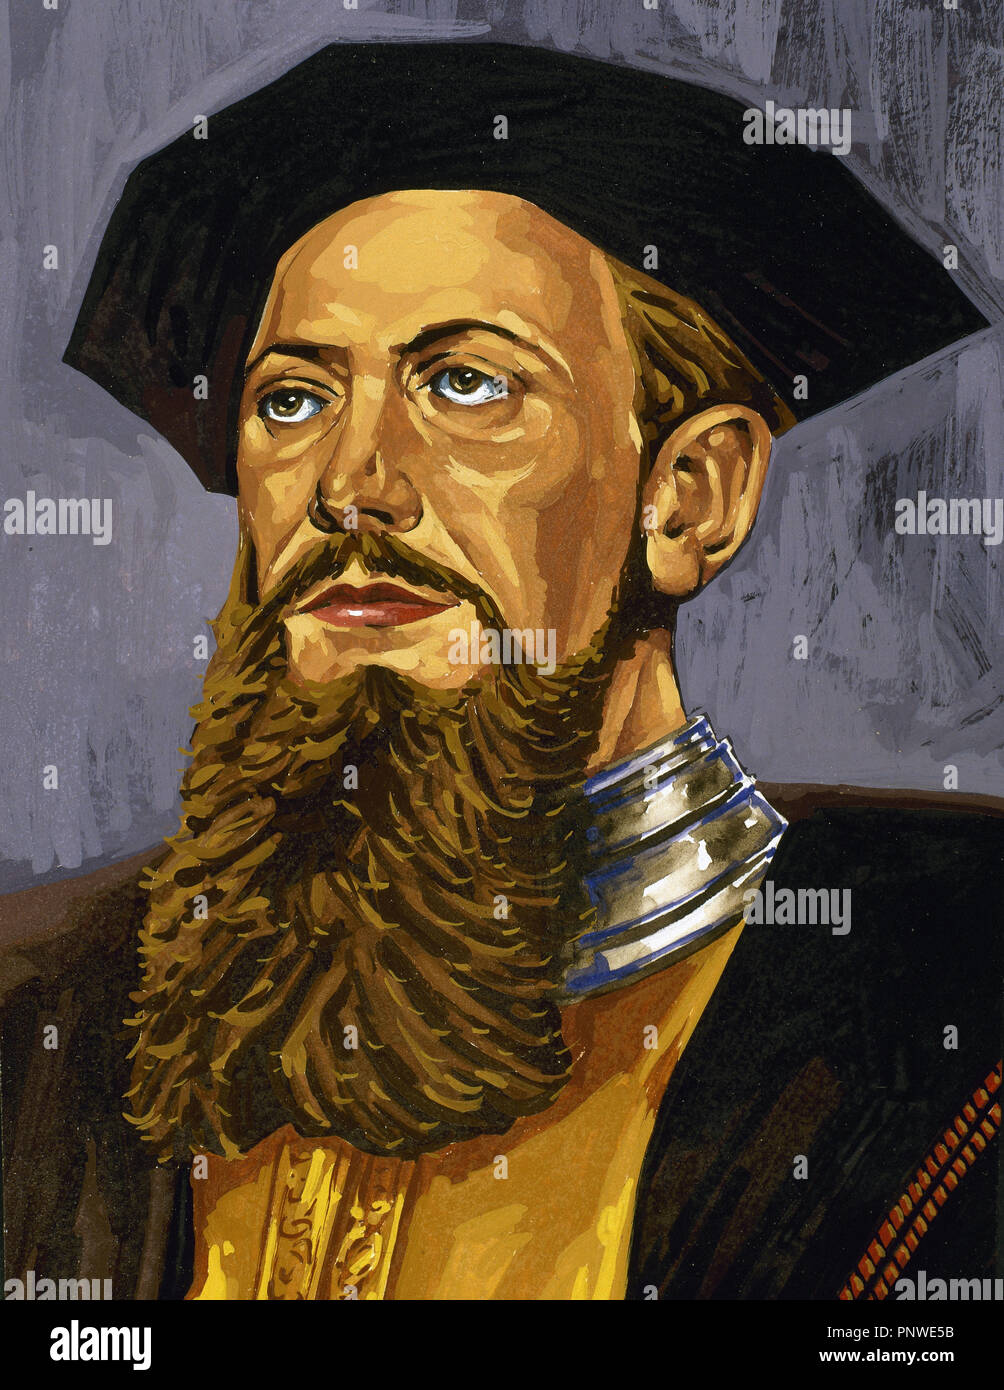 Vasco da Gama, premier comte de Vidigueira (ch. 1460/1469-1524). L'explorateur portugais. Banque D'Images